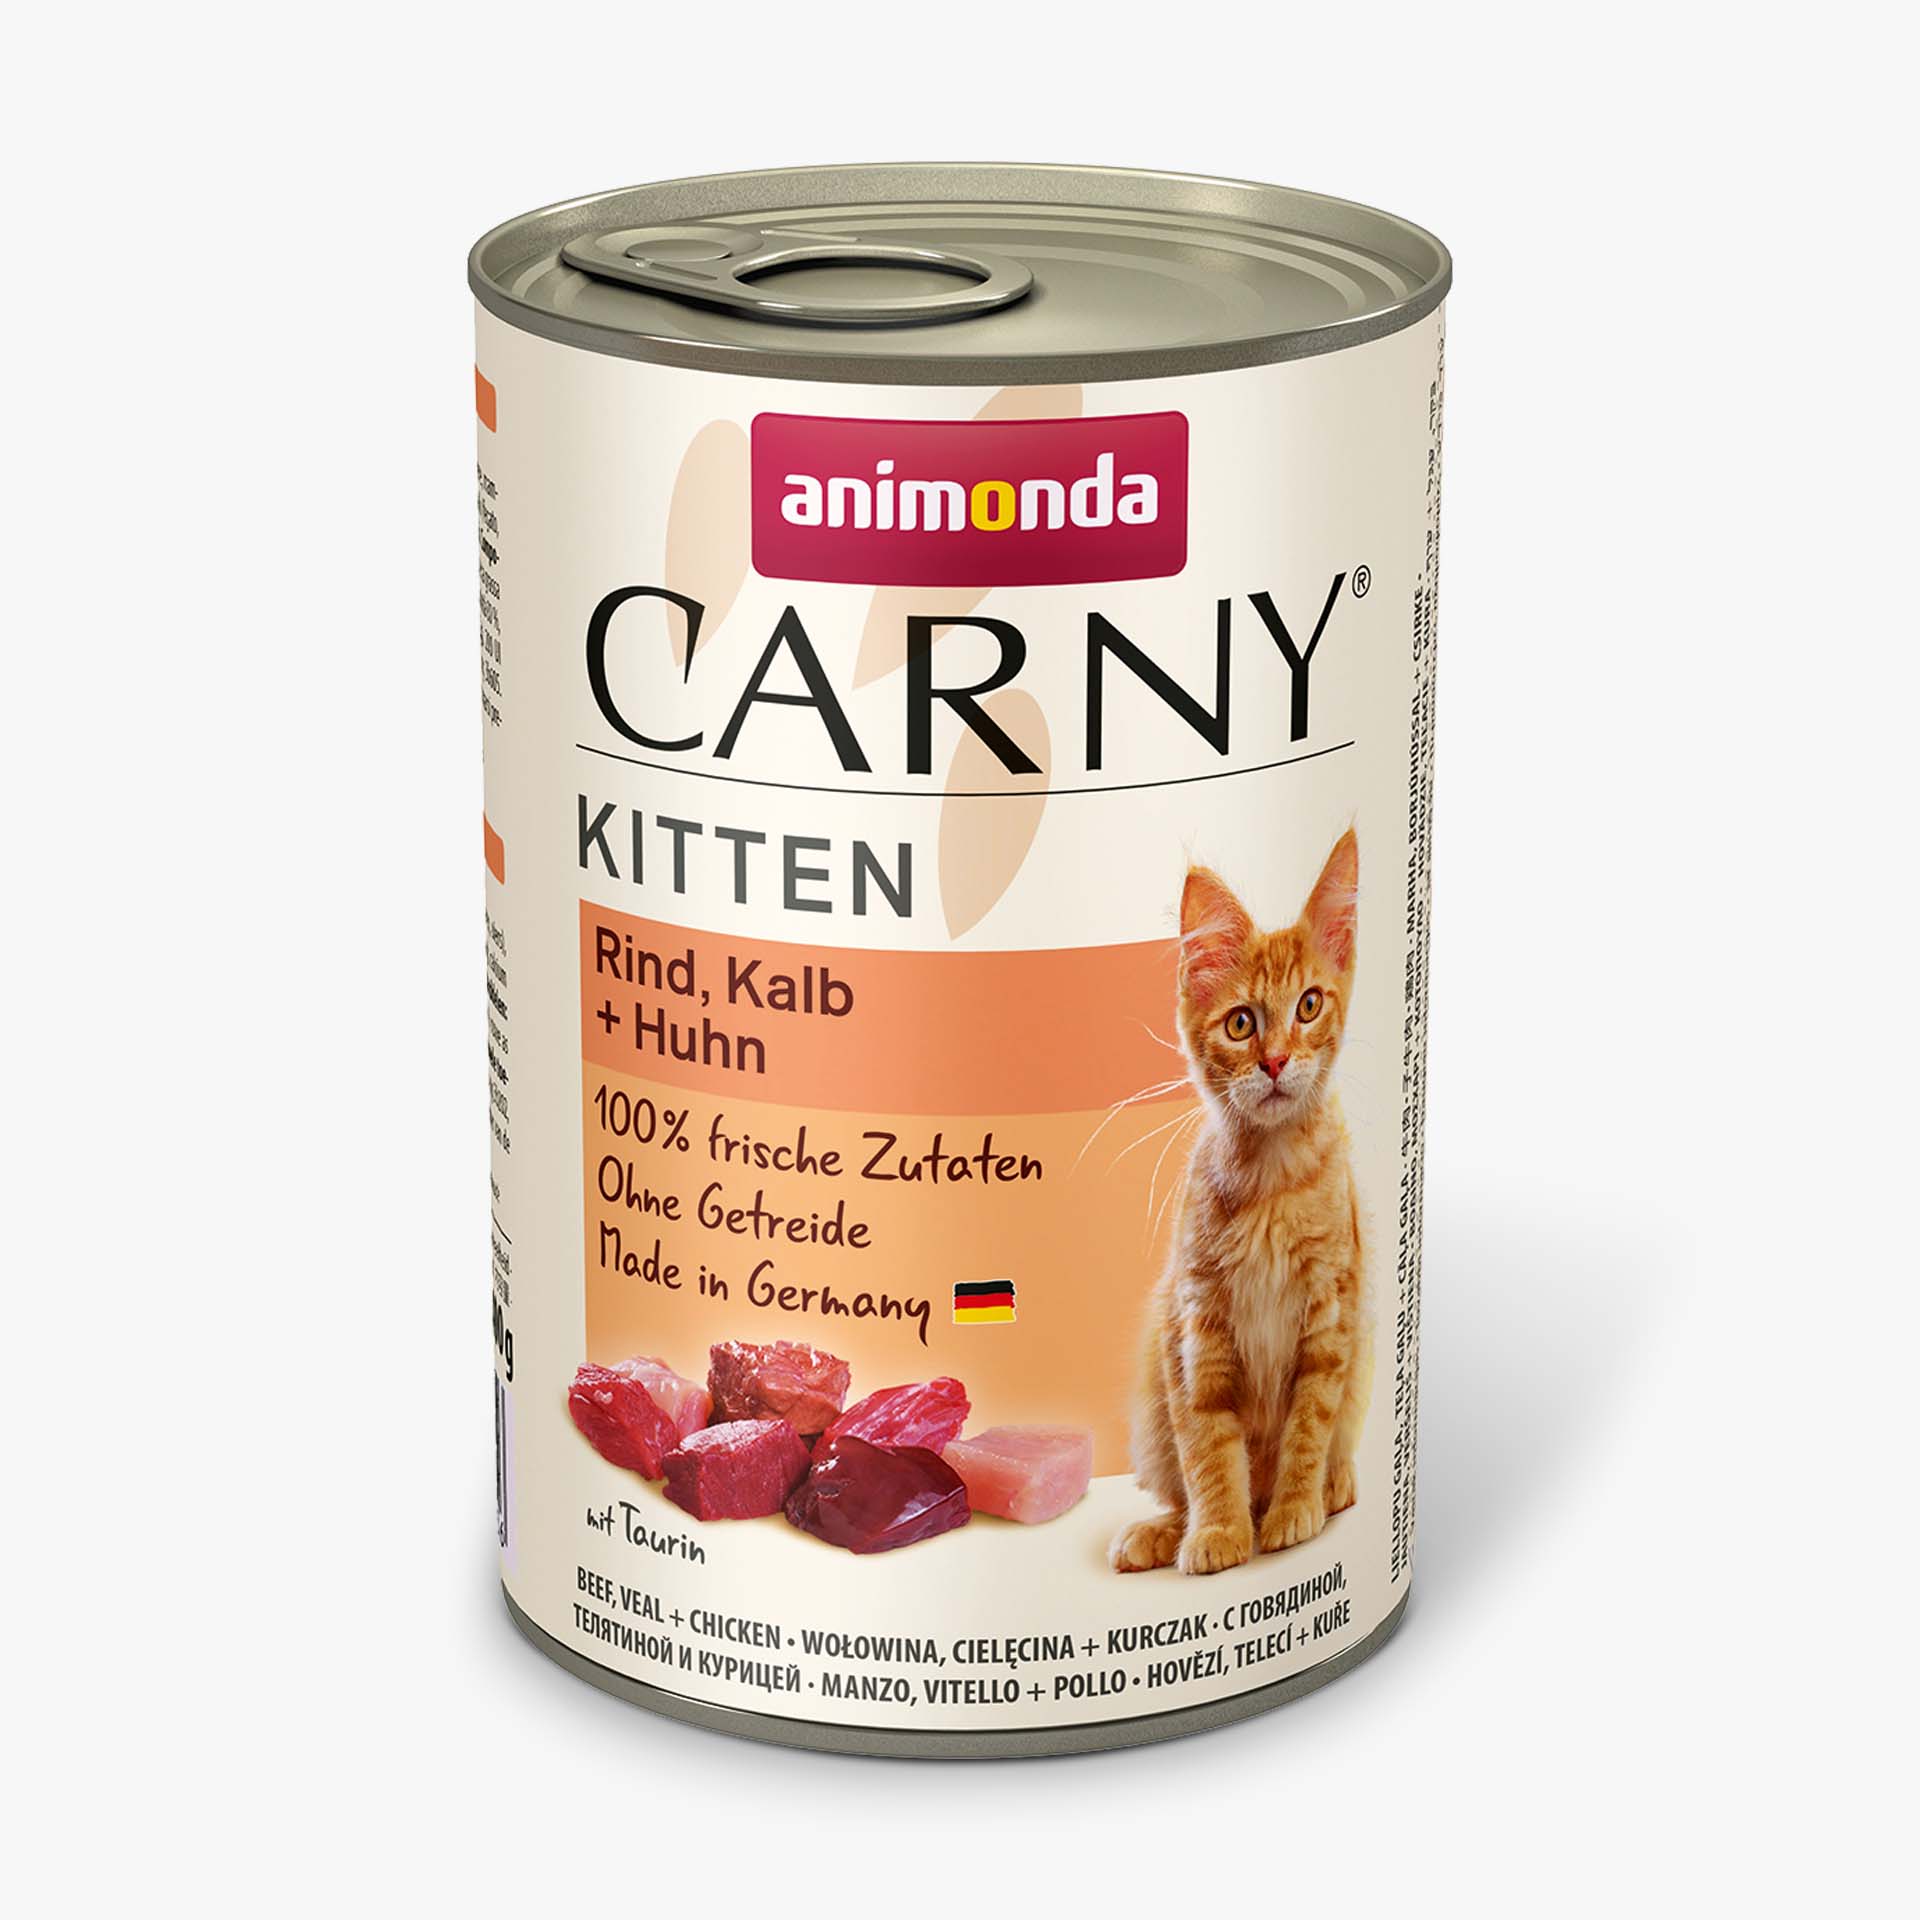 Carny Kitten Rind, Kalb + Huhn